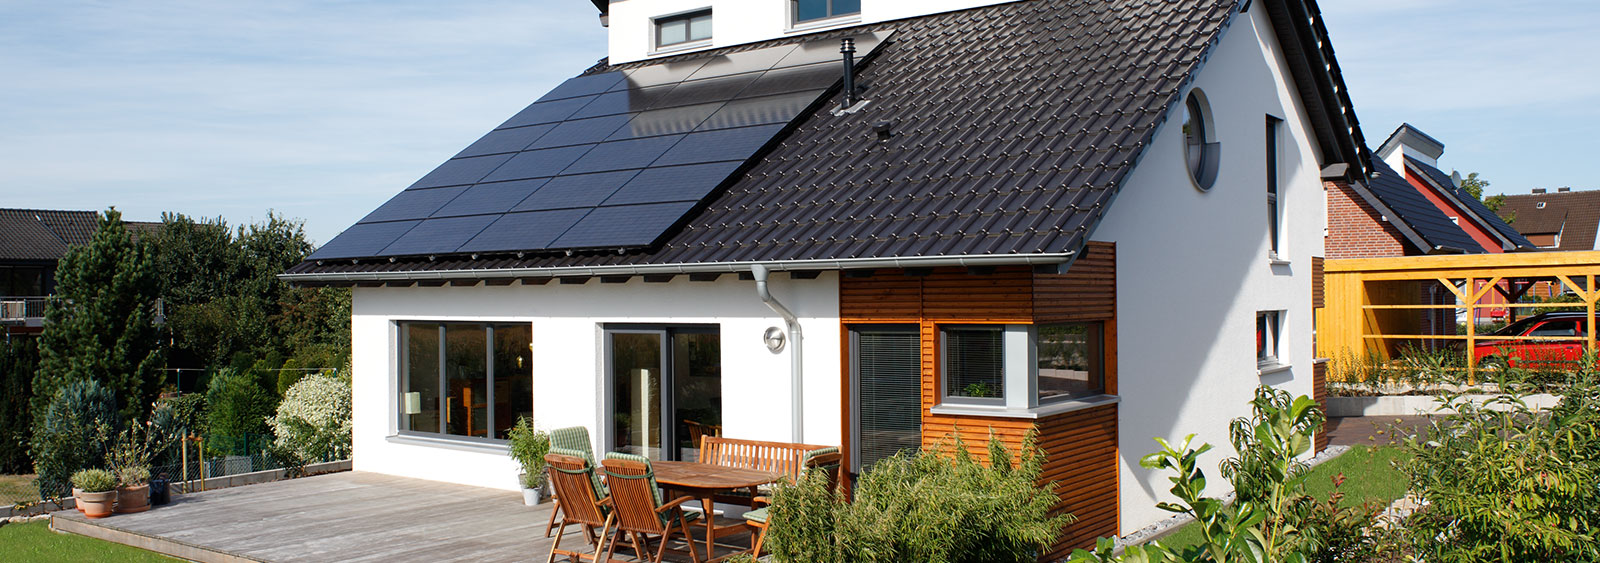 Haus und Solartechnik in Weilburg und Wetzlar